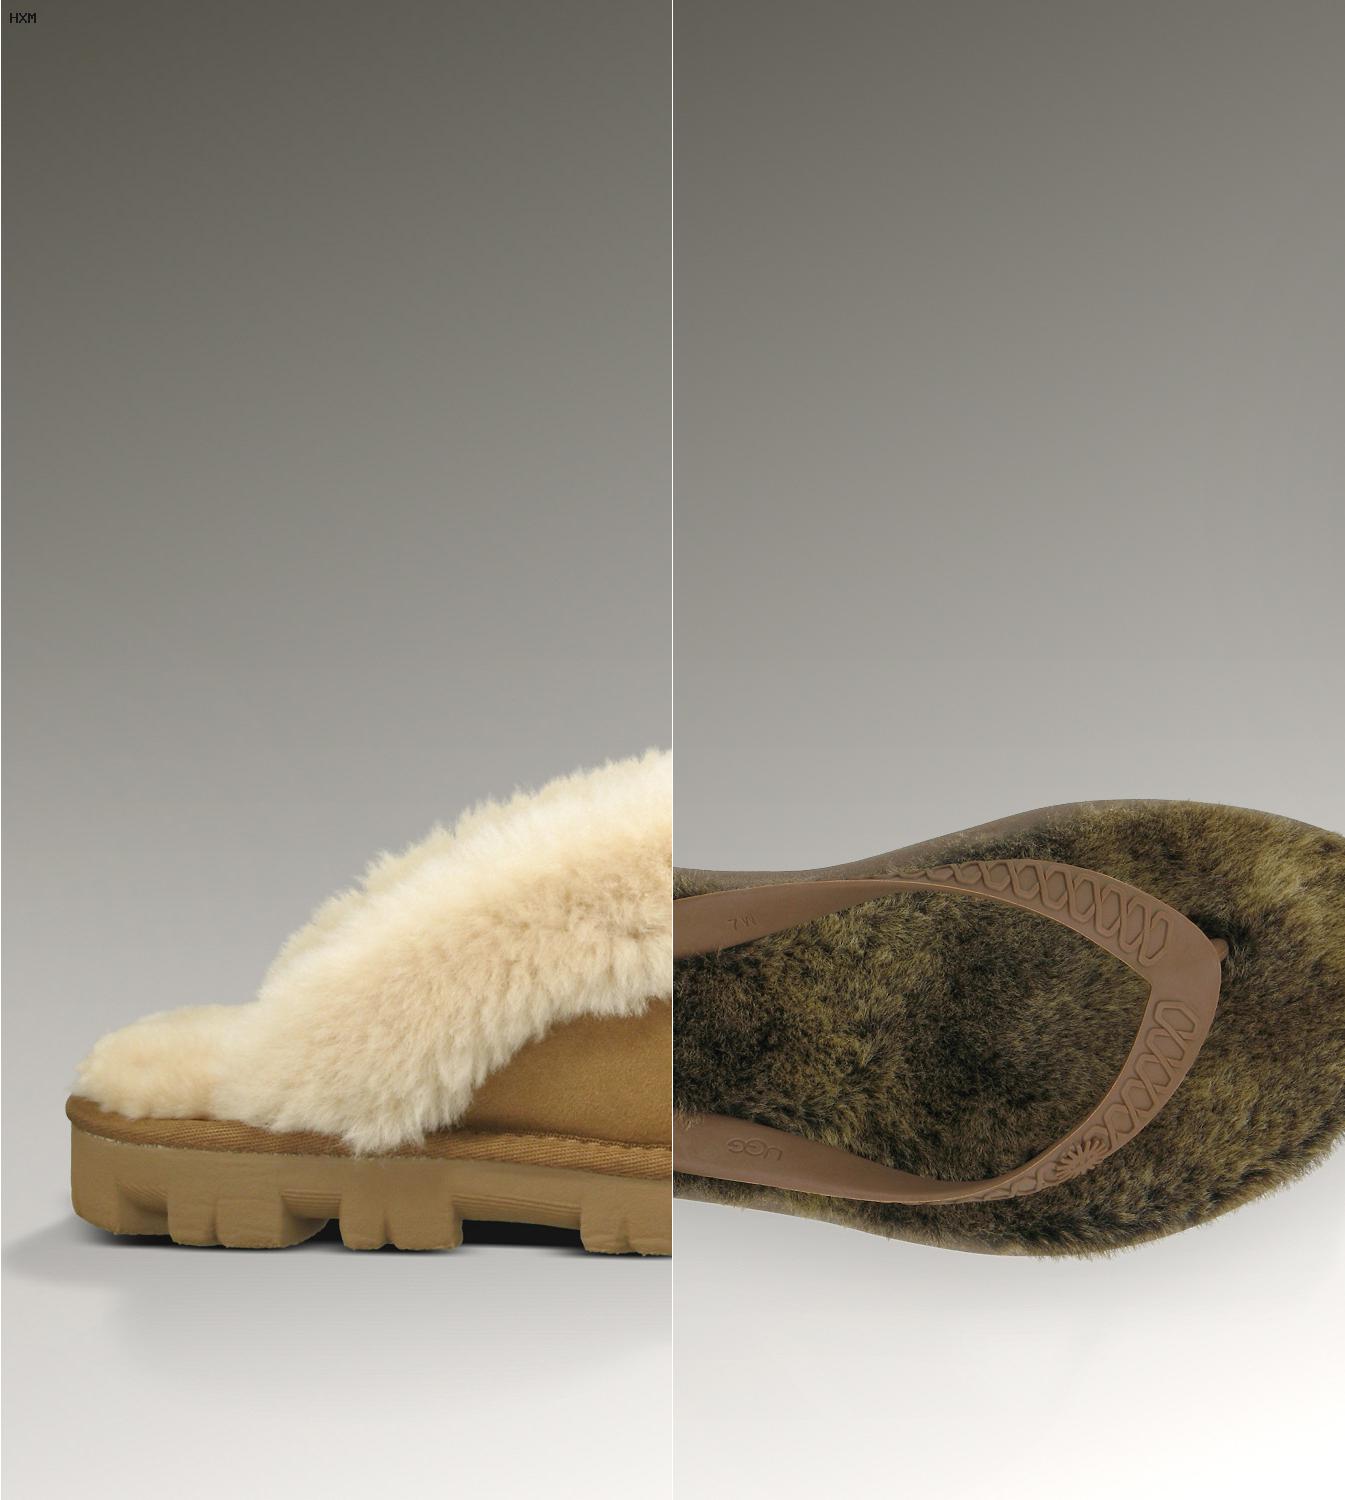 botas ugg se pueden usar en la nieve